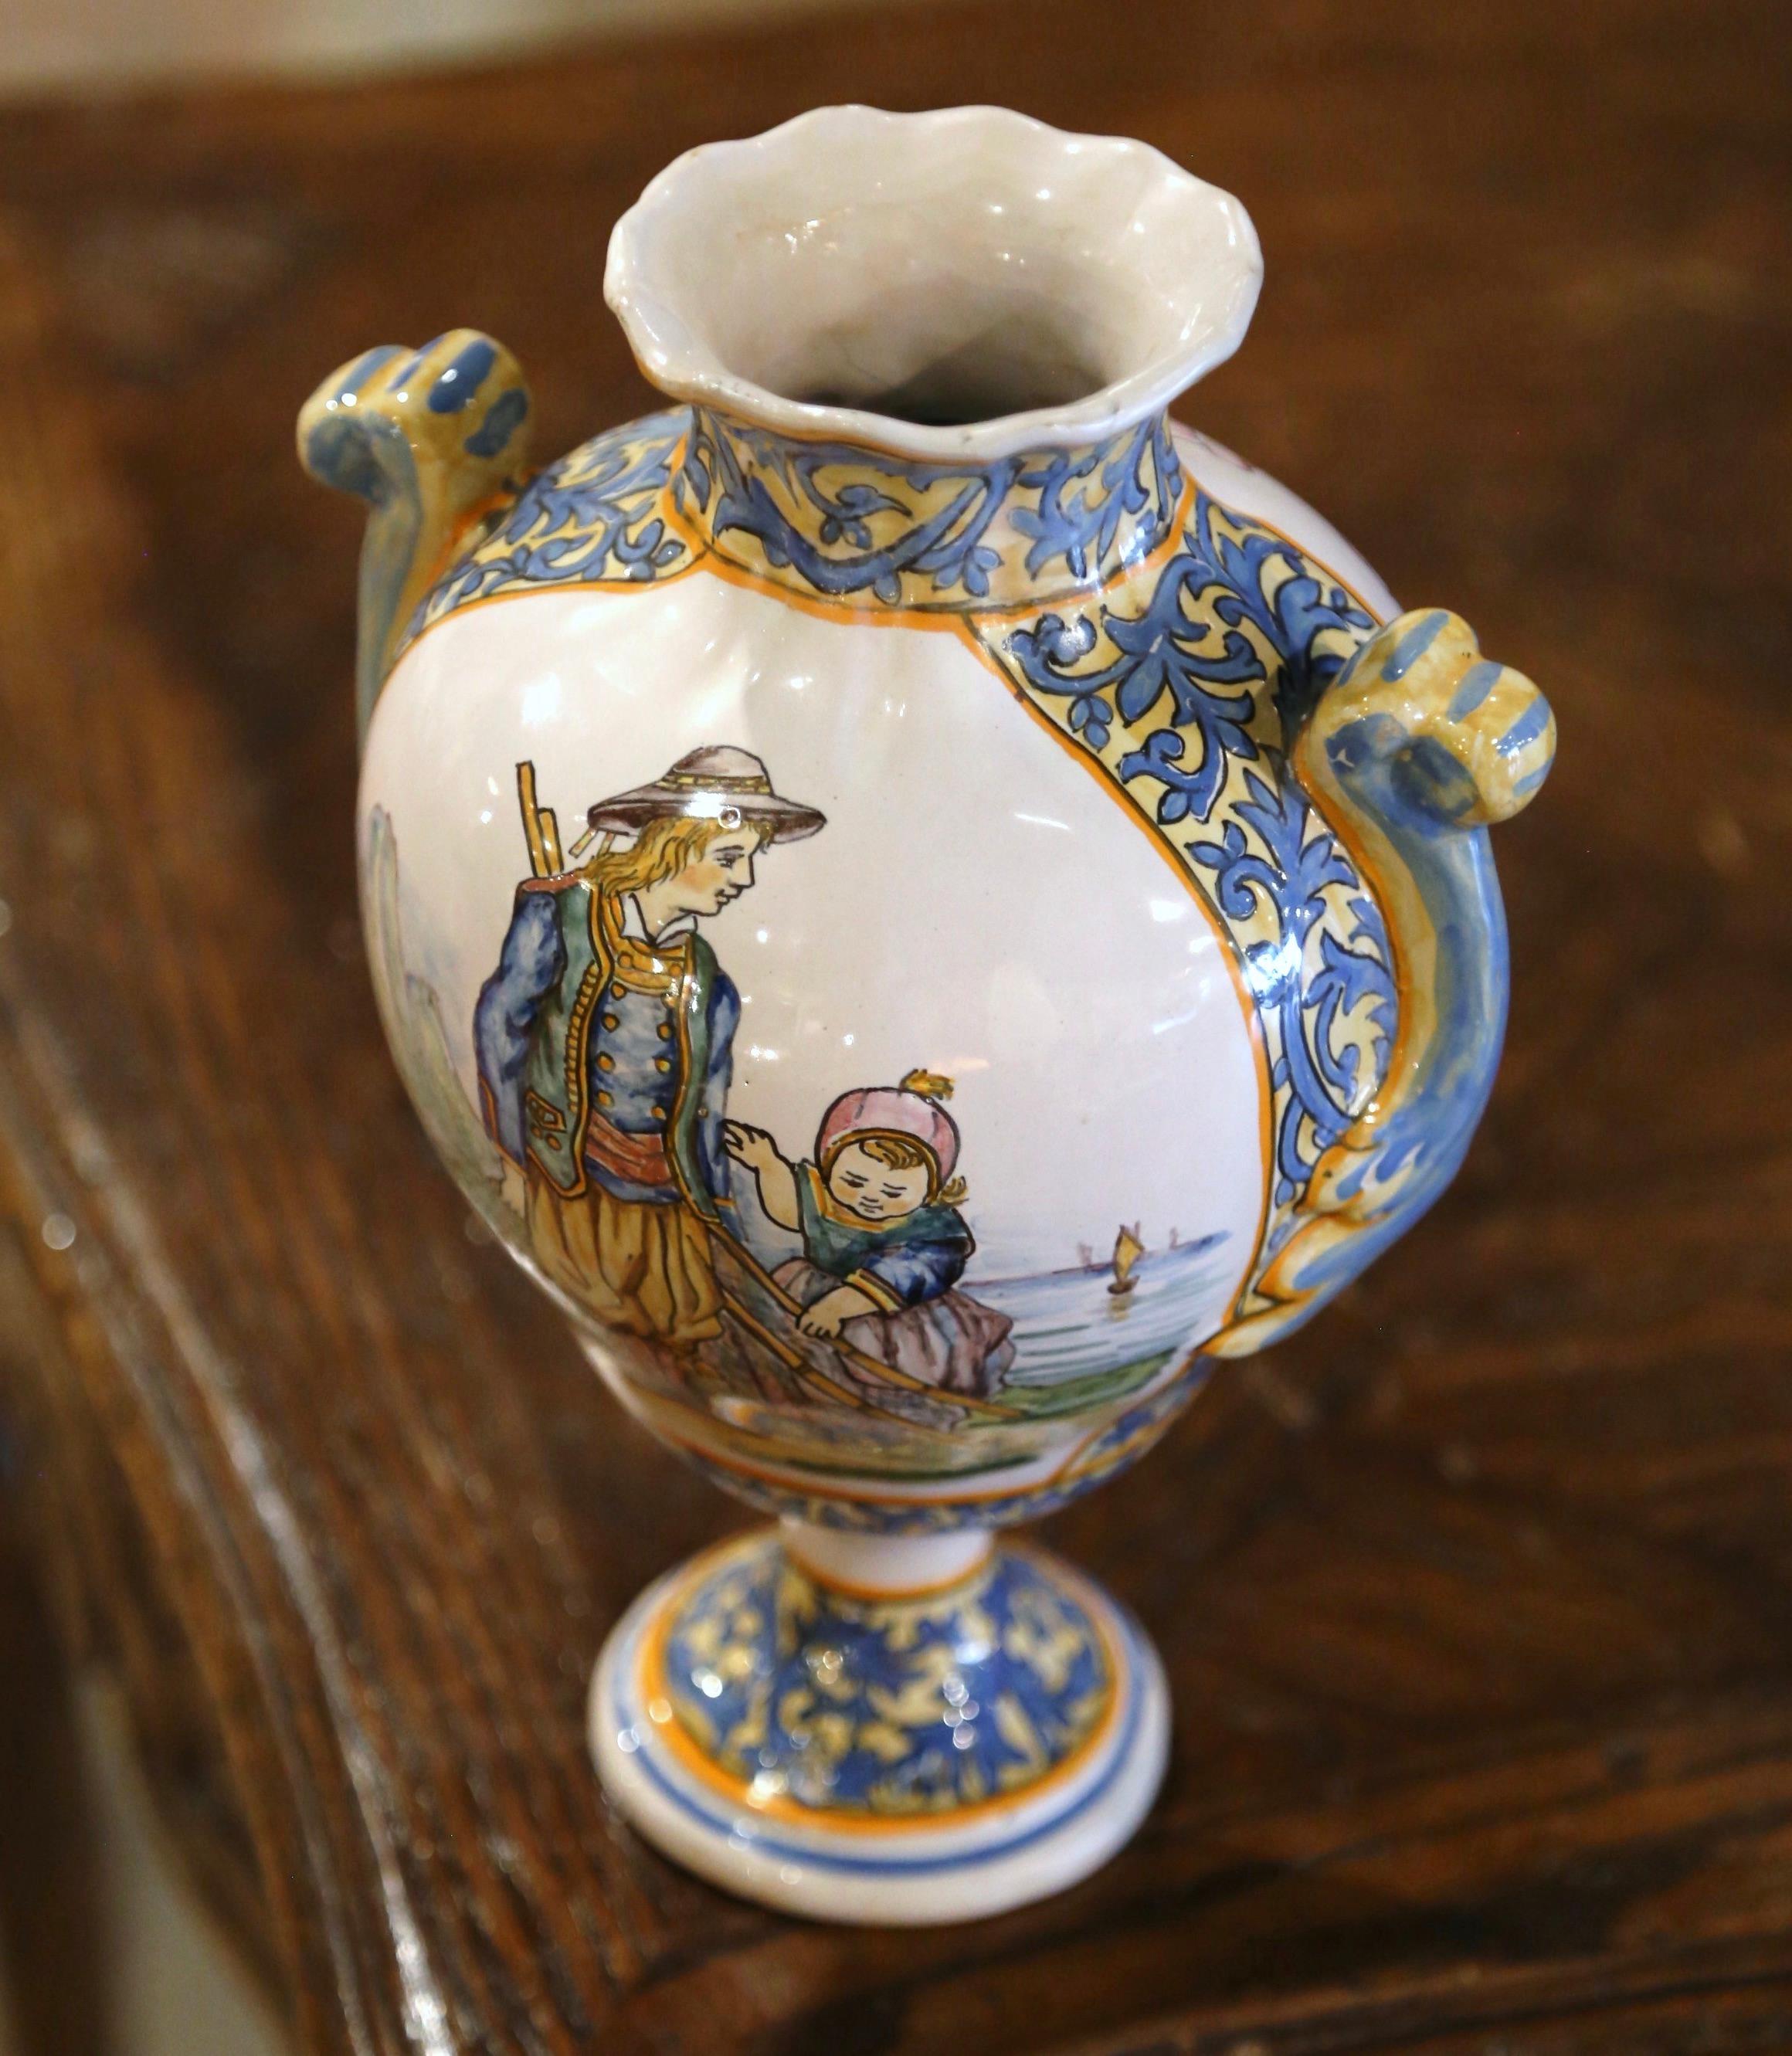  Die handbemalte Fayence-Vase wurde um 1895 in der Bretagne, Frankreich, hergestellt. Sie hat eine runde Form und ist am Rand mit einem Wellenschliff versehen. Das Gefäß mit seitlichen Henkeln ist in der Mitte mit einem Bretonen und seinem Kind beim